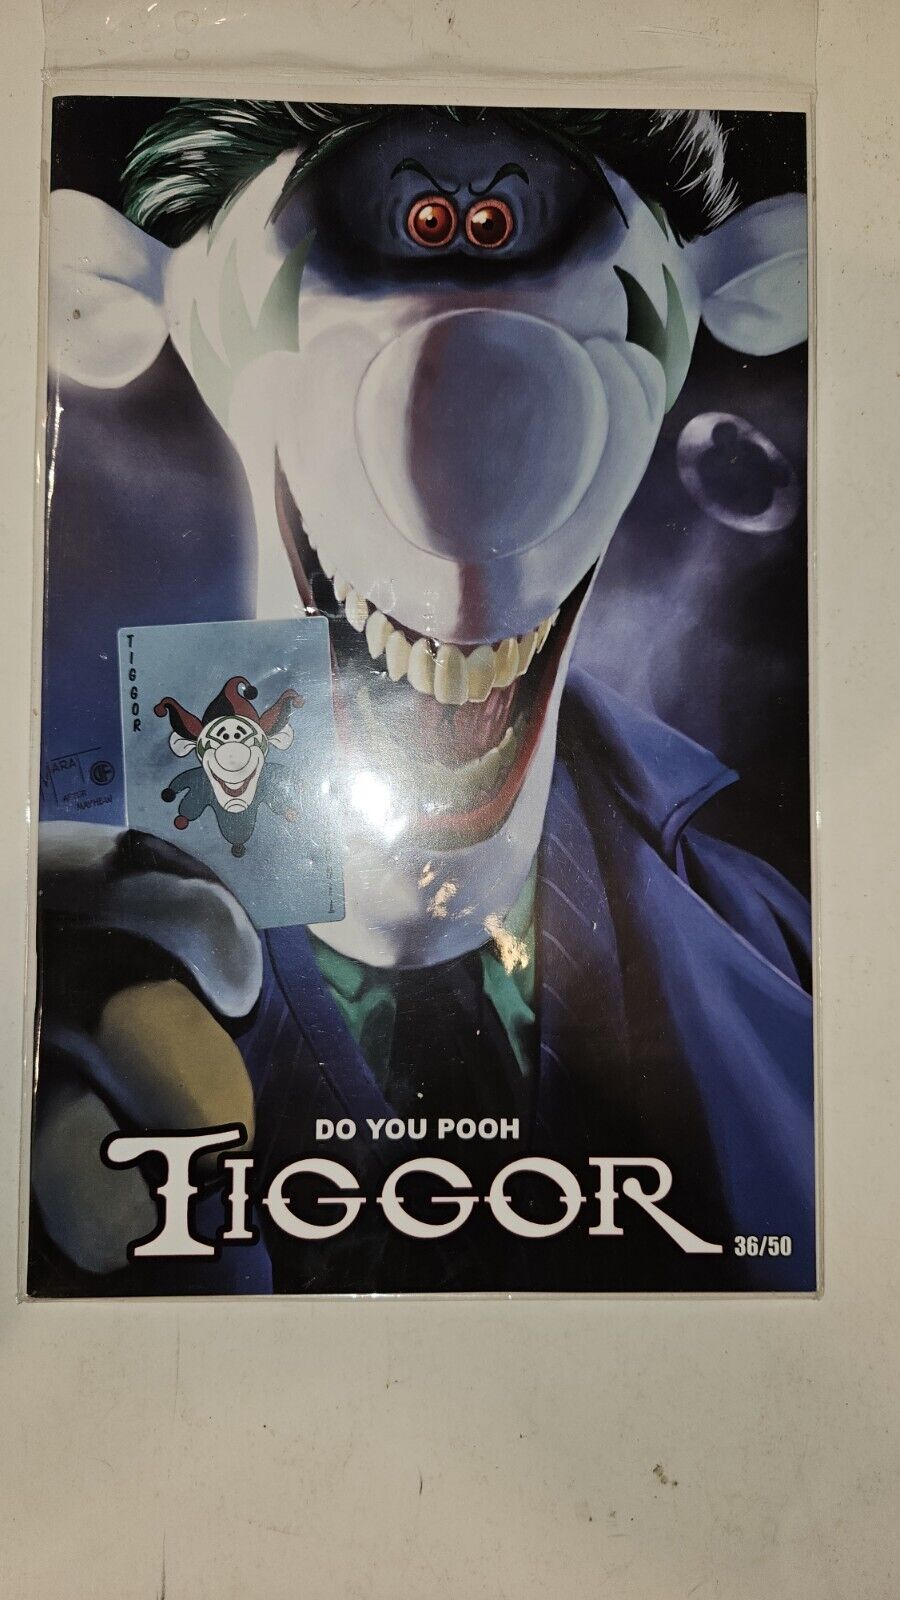 Do You Pooh: Tiggor Lakeside Comics Exclusive Cover Joker Homage 36/50